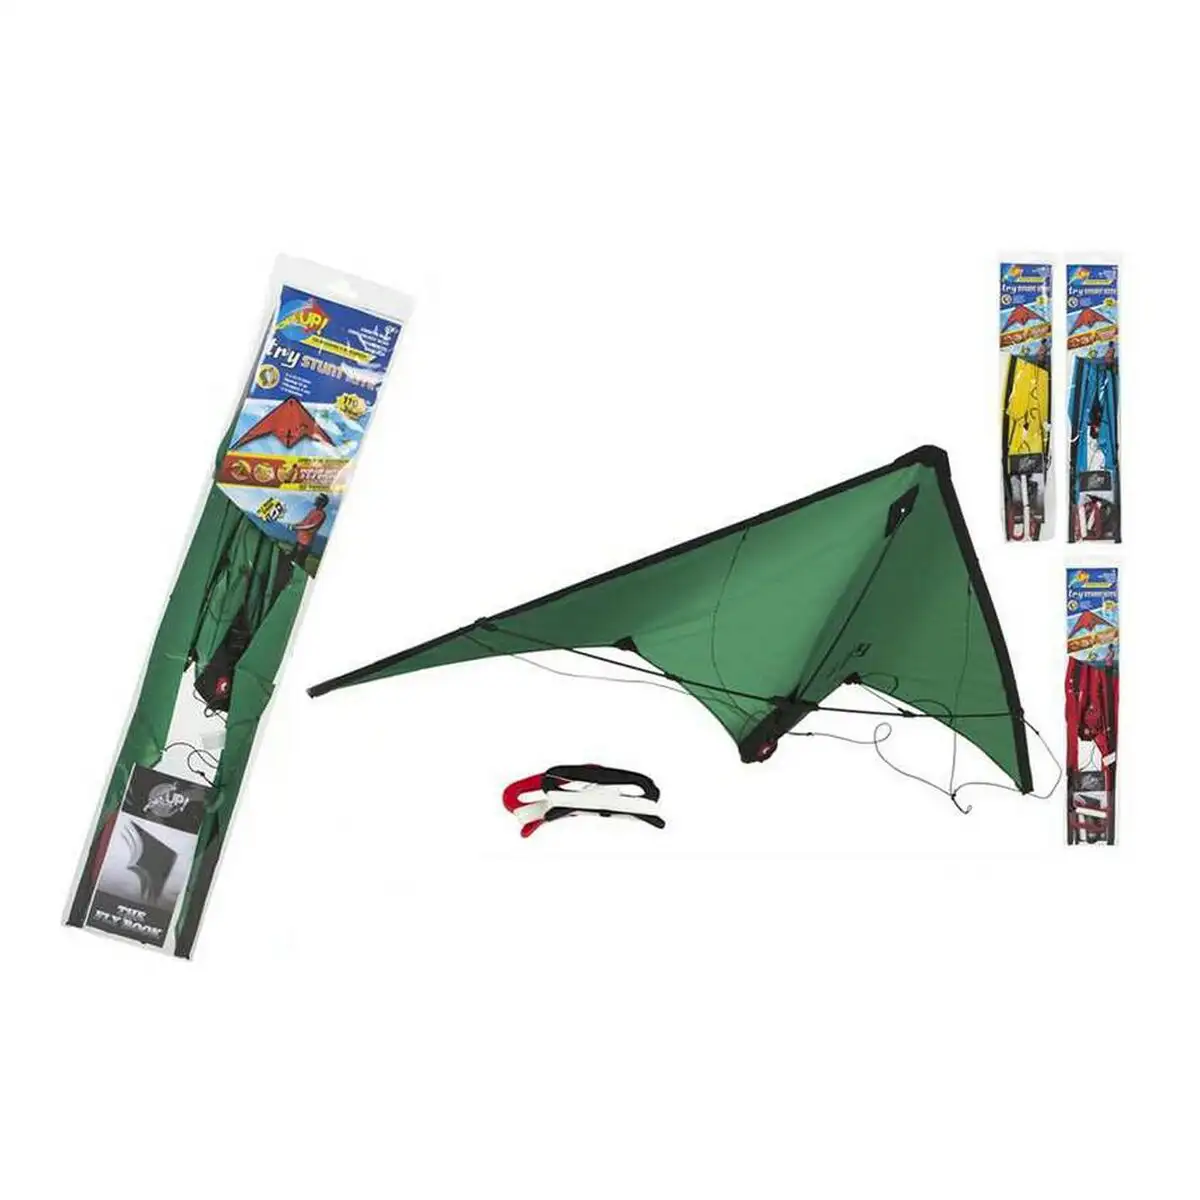 Cerf volant stunt kite pop up colorbaby 42732 110 x 38 cm _2952. DIAYTAR SENEGAL - L'Art de Vivre le Shopping Authentique. Découvrez notre boutique en ligne et trouvez des produits qui incarnent la passion et le savoir-faire du Sénégal.